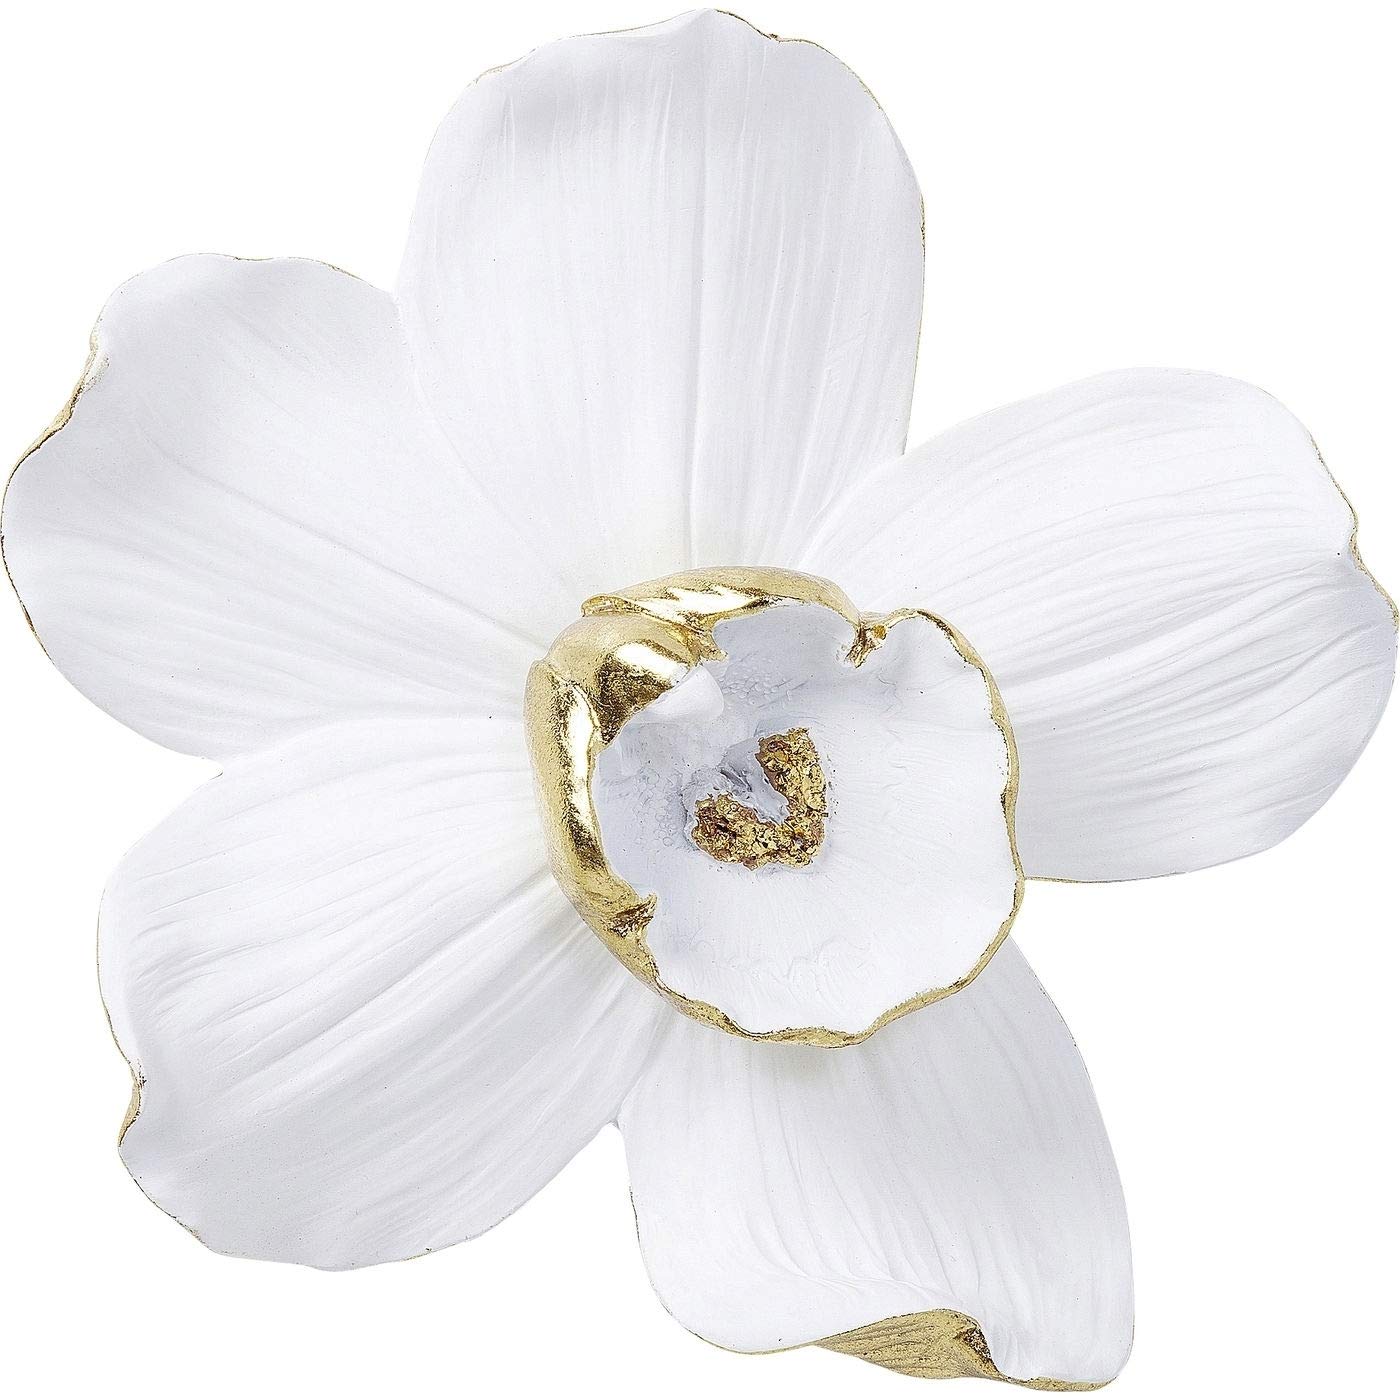 Kare Design Wandschmuck Orchid, weiß/gold, edle Orchideen-Blüte, handgefertigt, Kunststein, Wandmontage, XL-Format, Durchmesser 25 cm